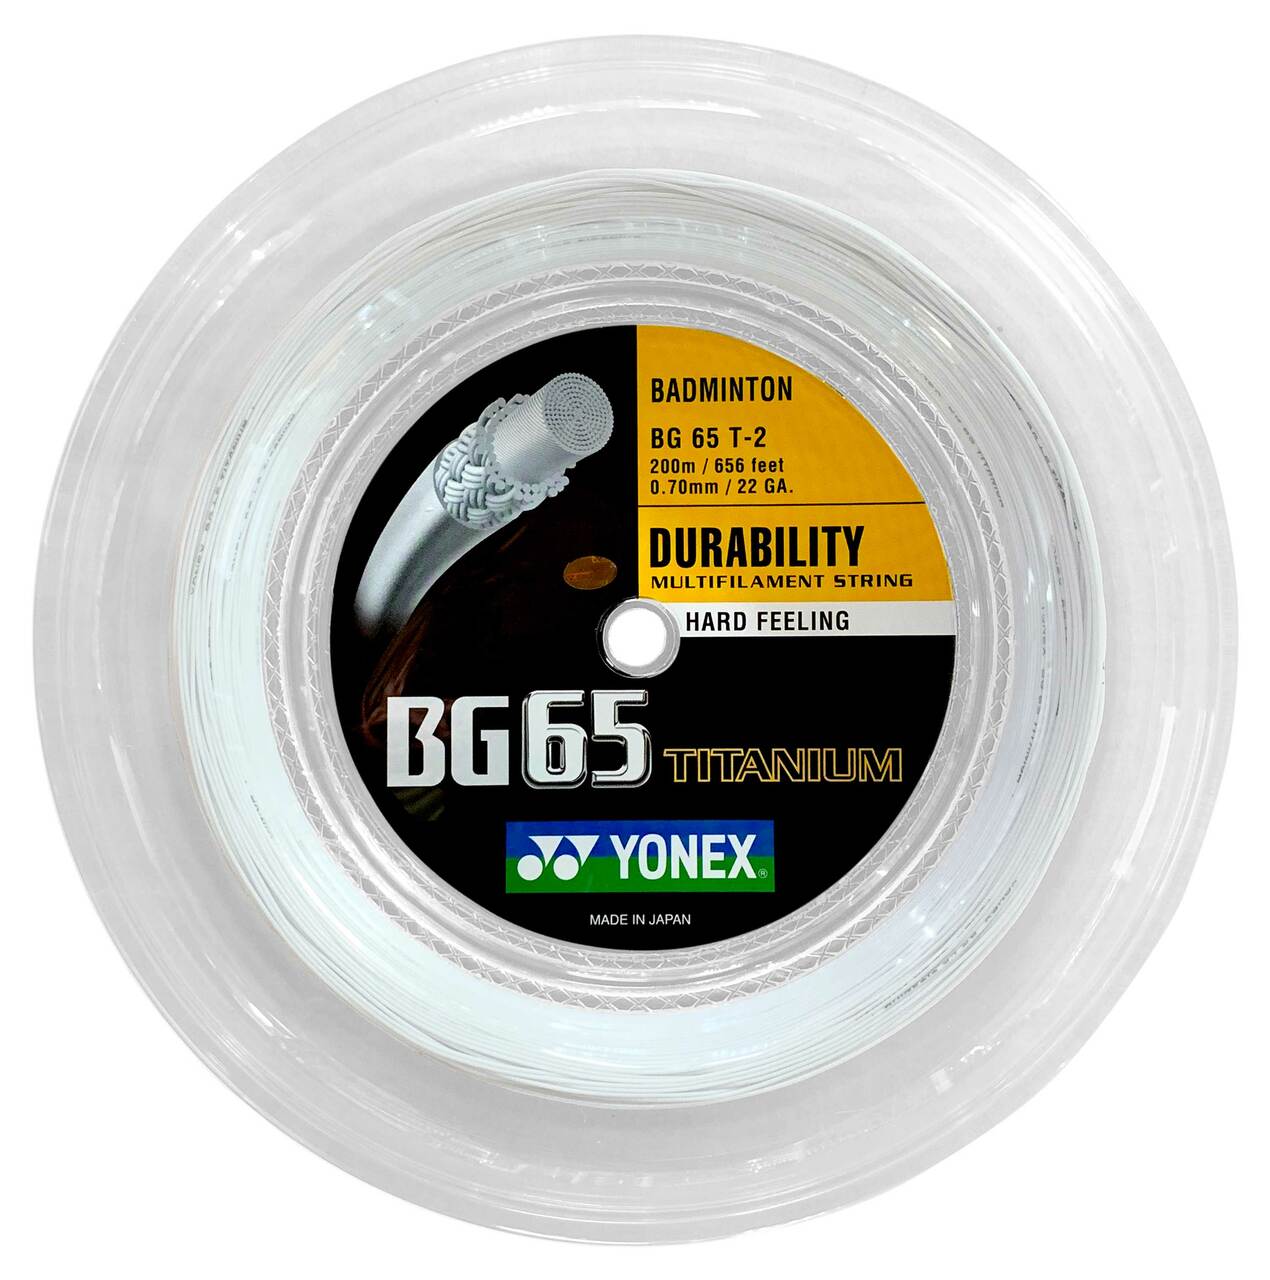 Yonex BG65 Titanium (BG65 Ti) 200m Reel (White) Badminton String